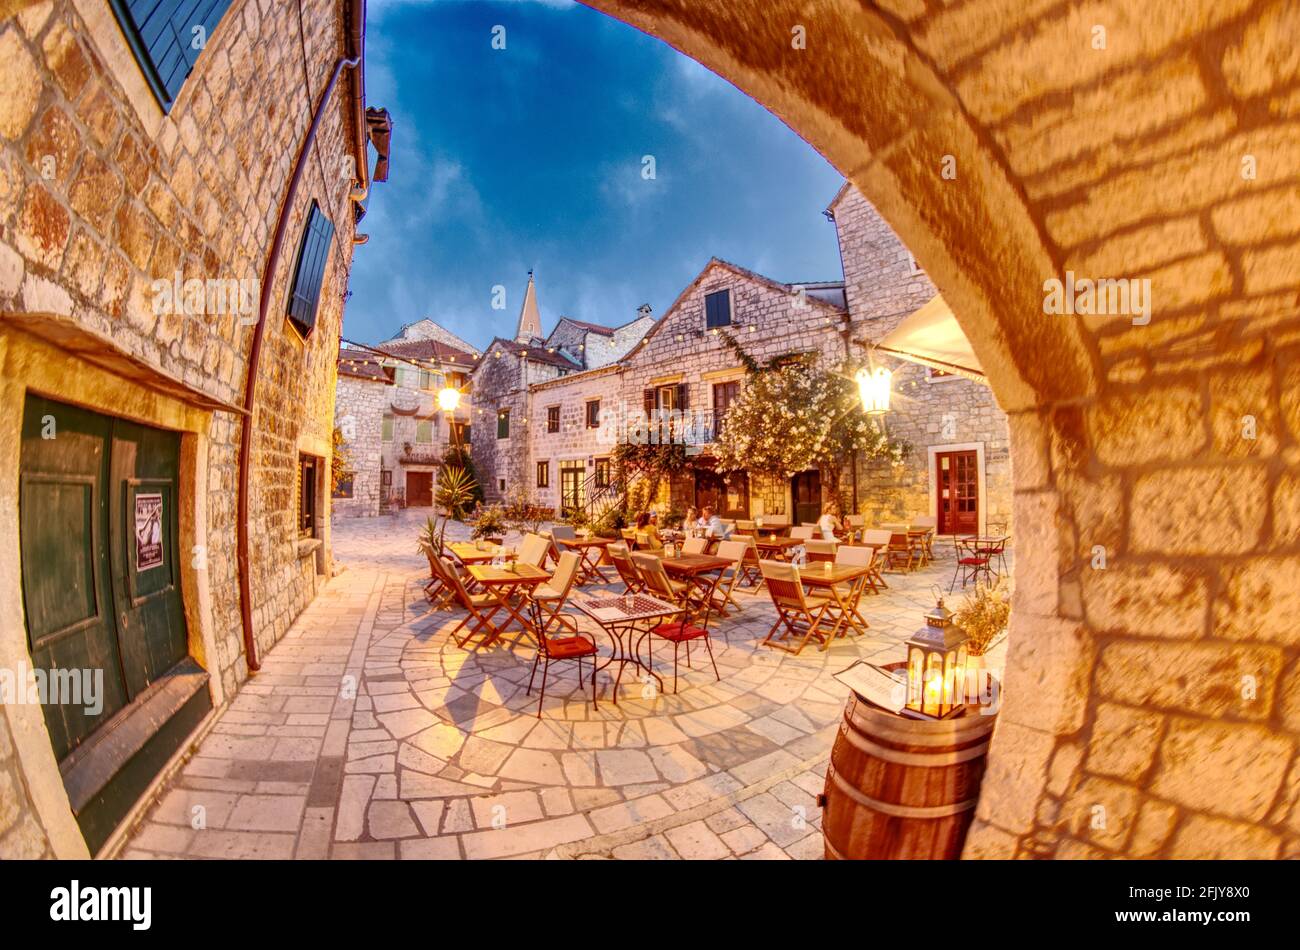 Croation Altstadt Gassen mit alten Steinhäusern in Stari Grad Hvar - Kroatien voller Leben Stockfoto